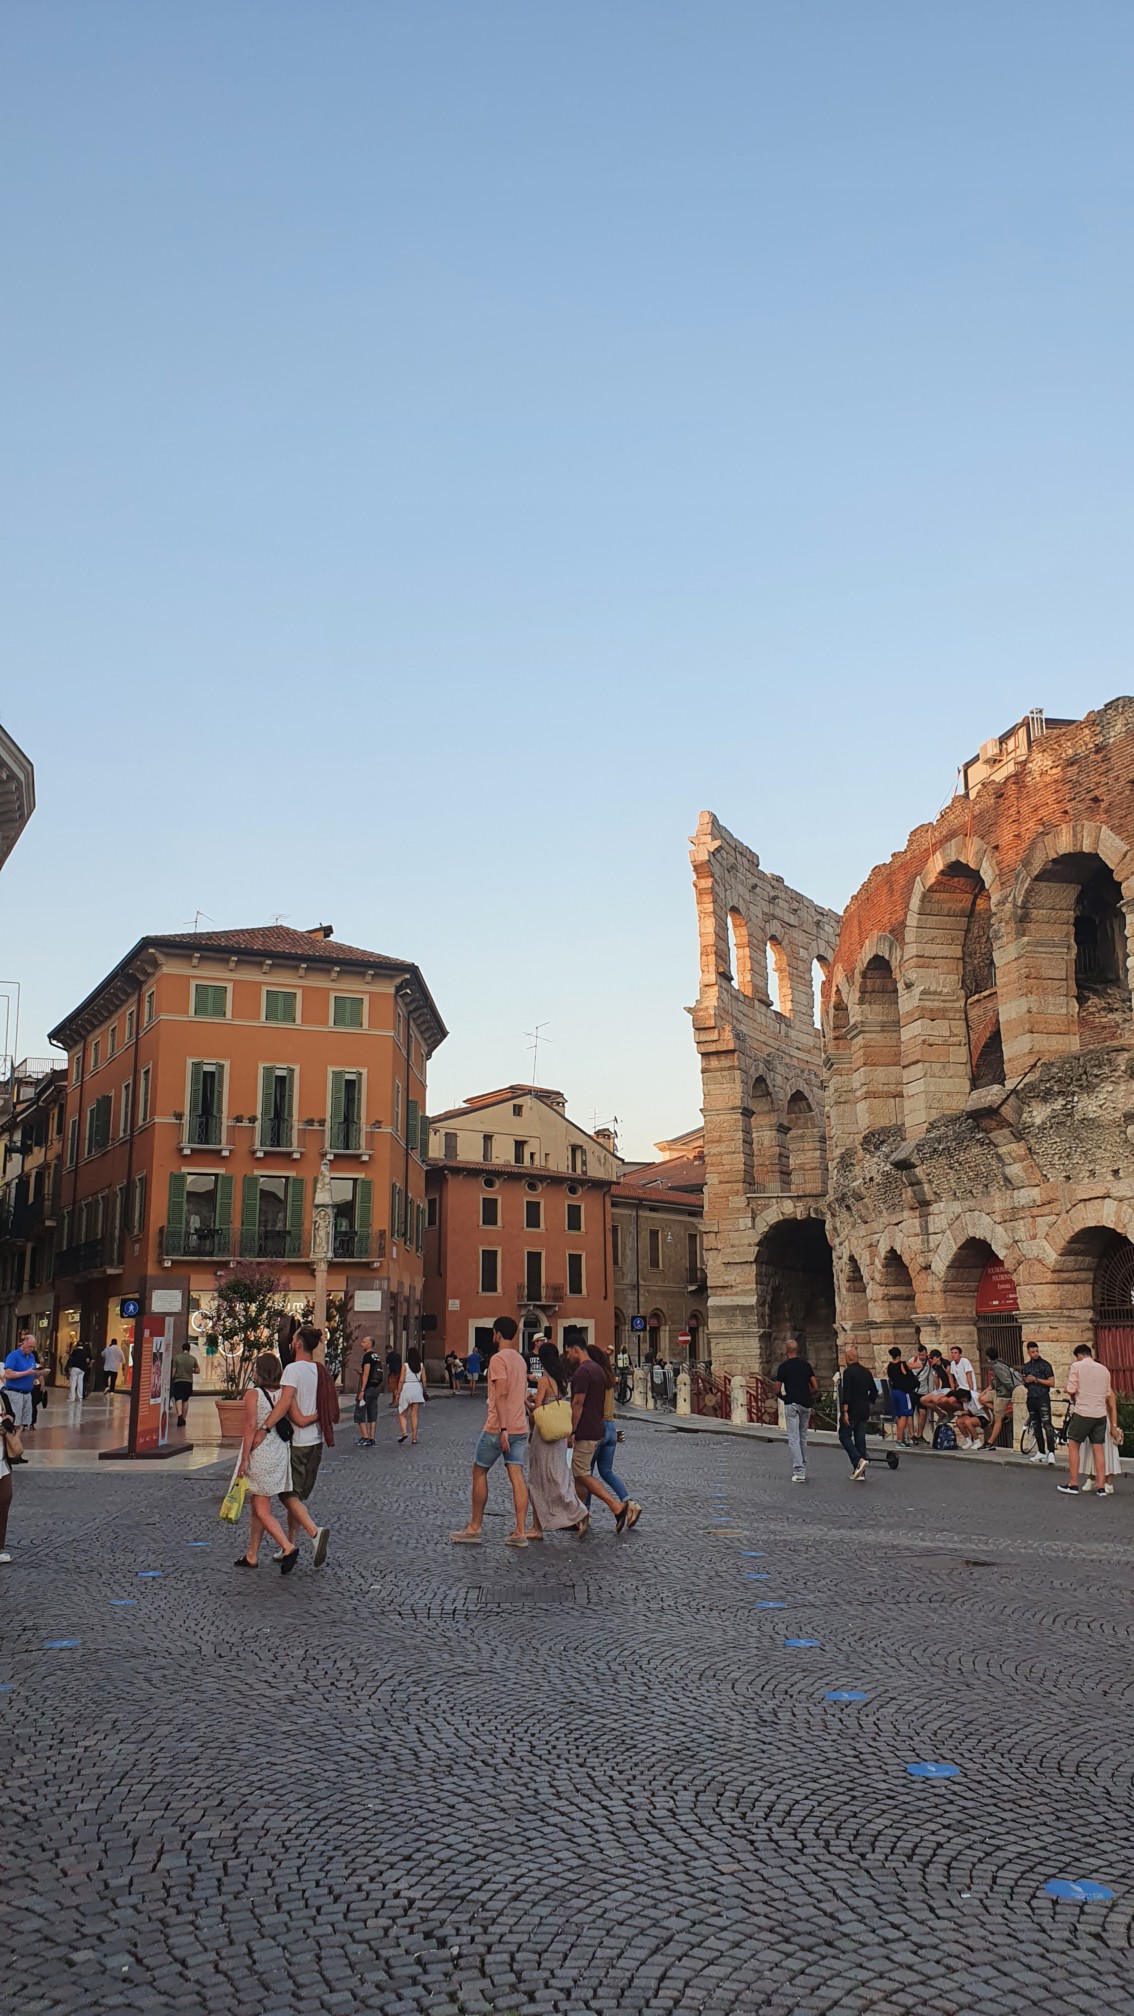 Piazza Brà mit Blick auf das römische Amphitheater in Verona